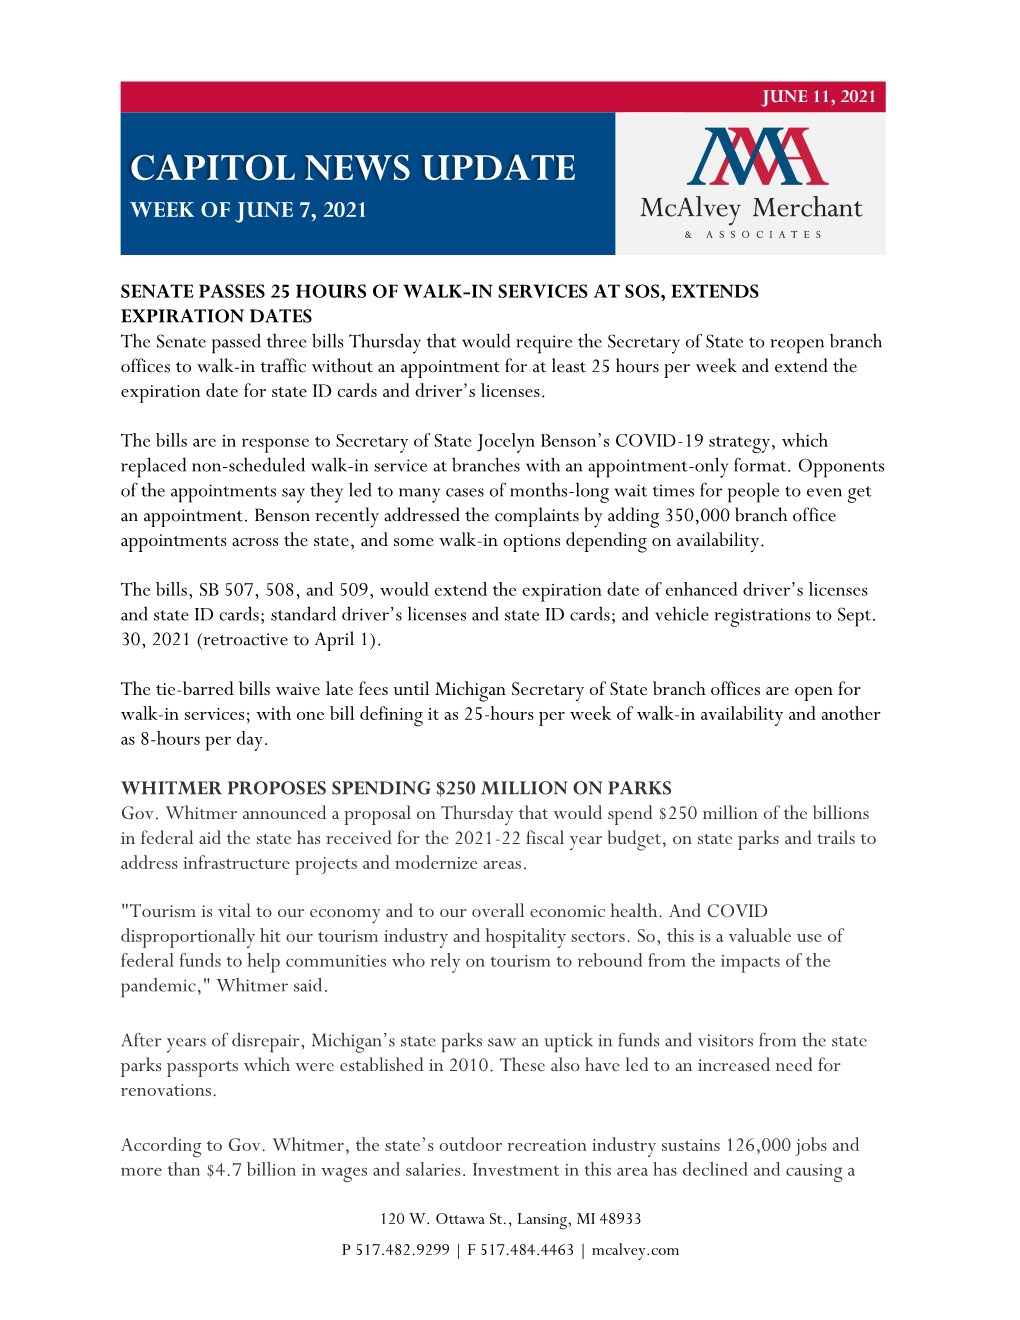 Capitol News Update Week of June 7, 2021